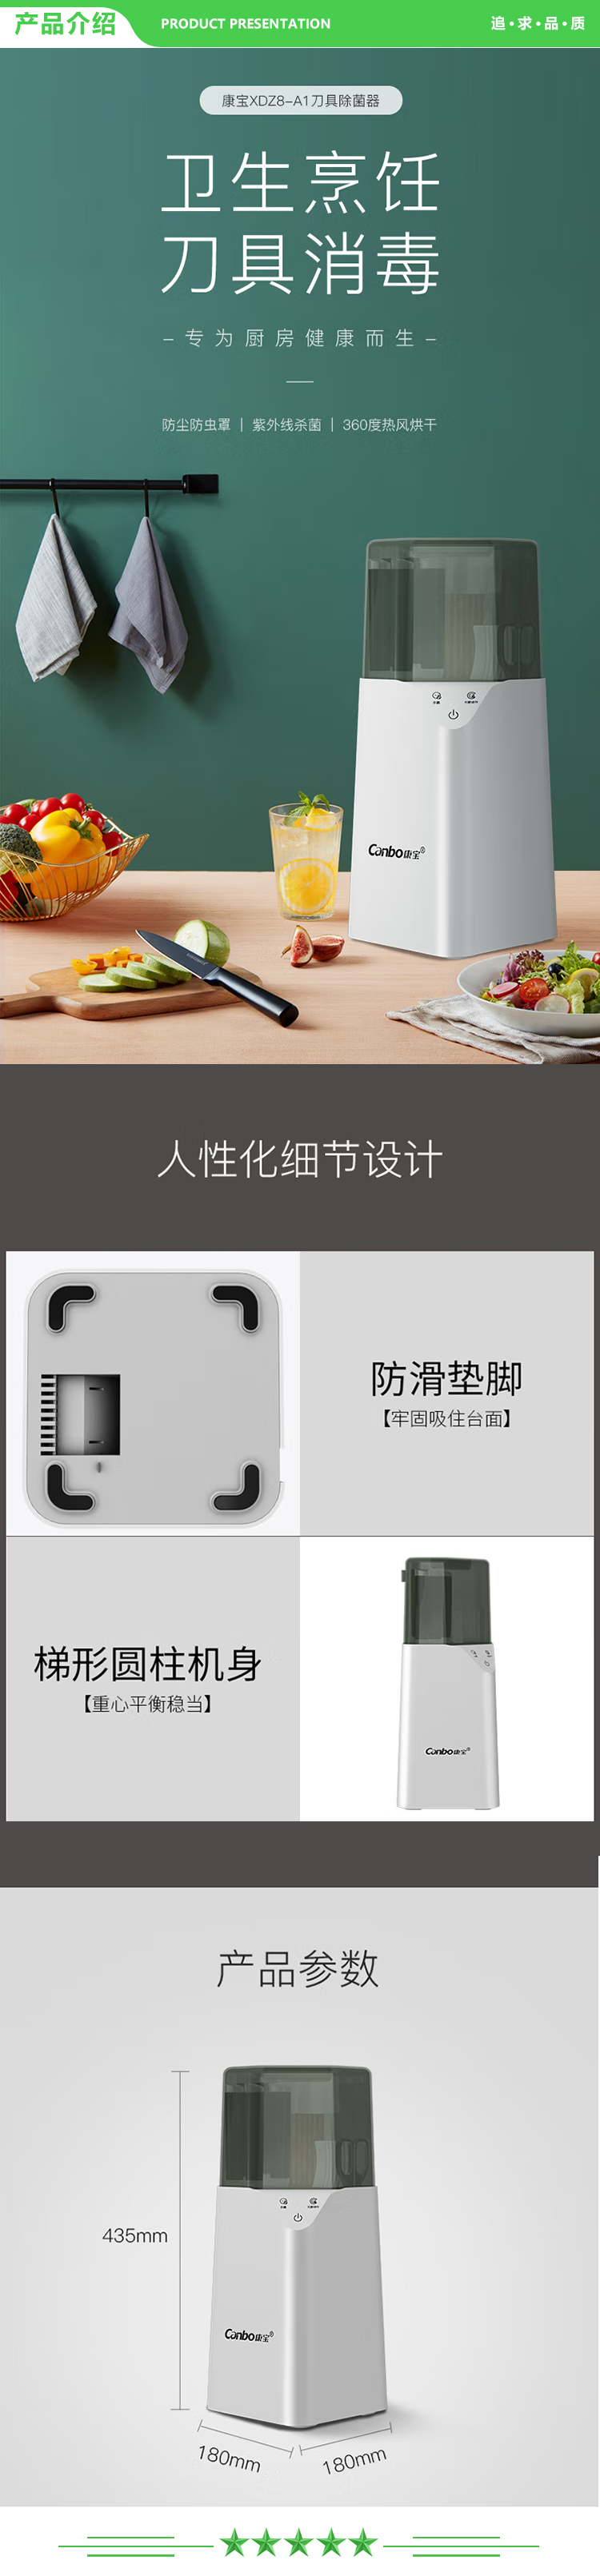 康宝 Canbo XDZ8-A1 刀具筷子保洁 家用小型多功能紫外线烘干刀具收纳一体架 .jpg